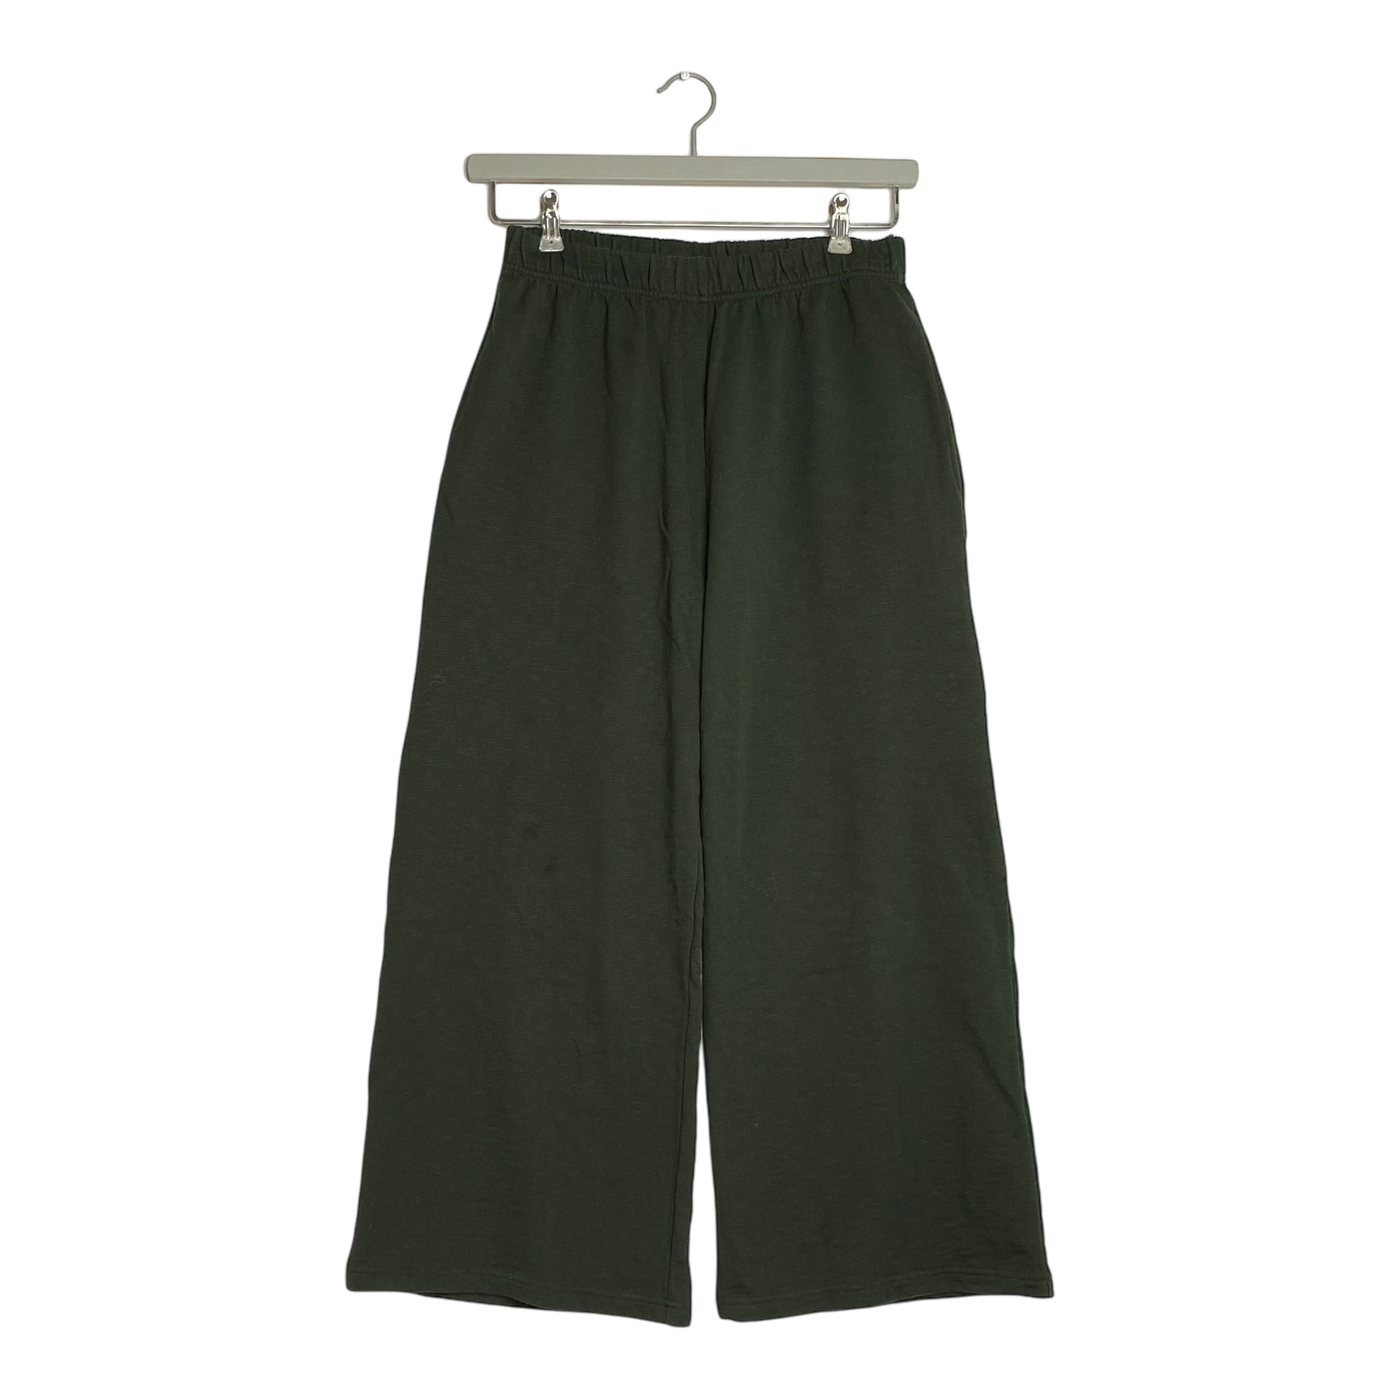 Mainio sweatpants, dark green | woman L/XL